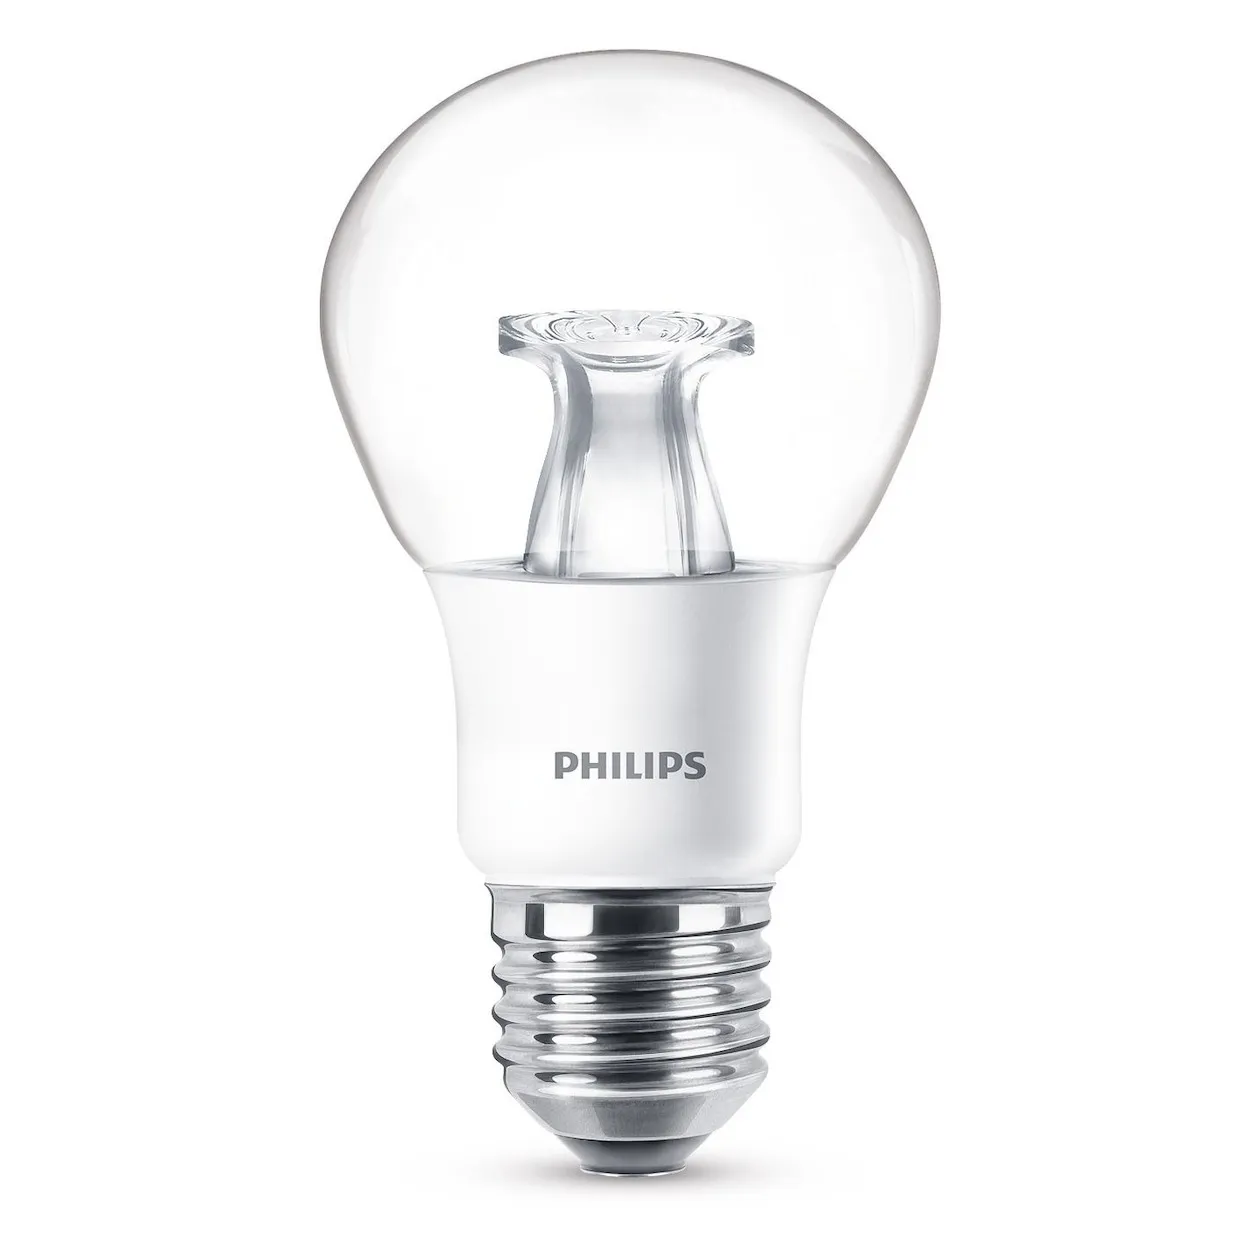 Philips LED lamp E27 6W 470Lm peer helder dimbaar